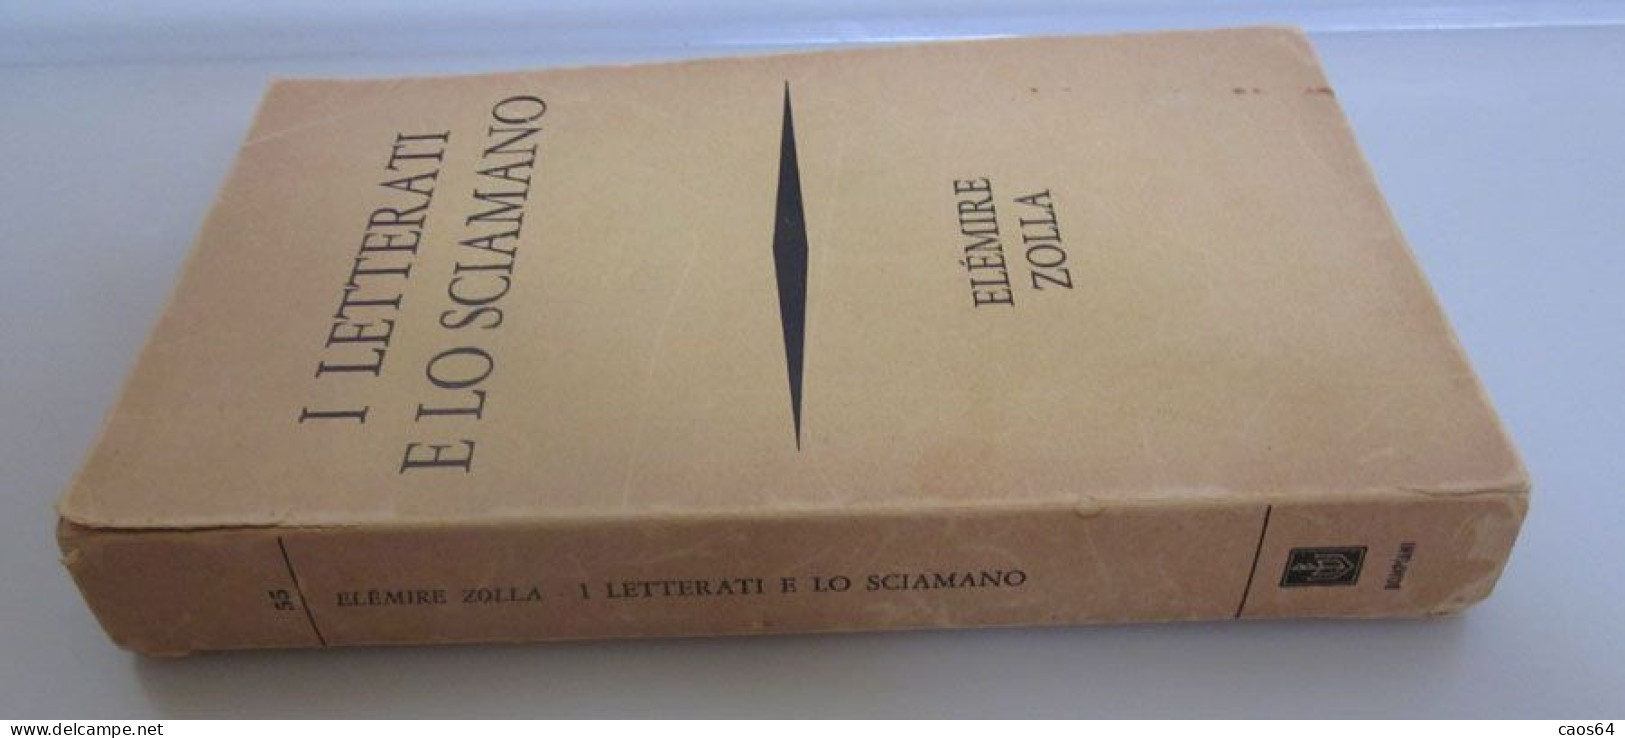 I Letterati E Lo Sciamano Elémire Zolla Bompiani 1969 - Religion